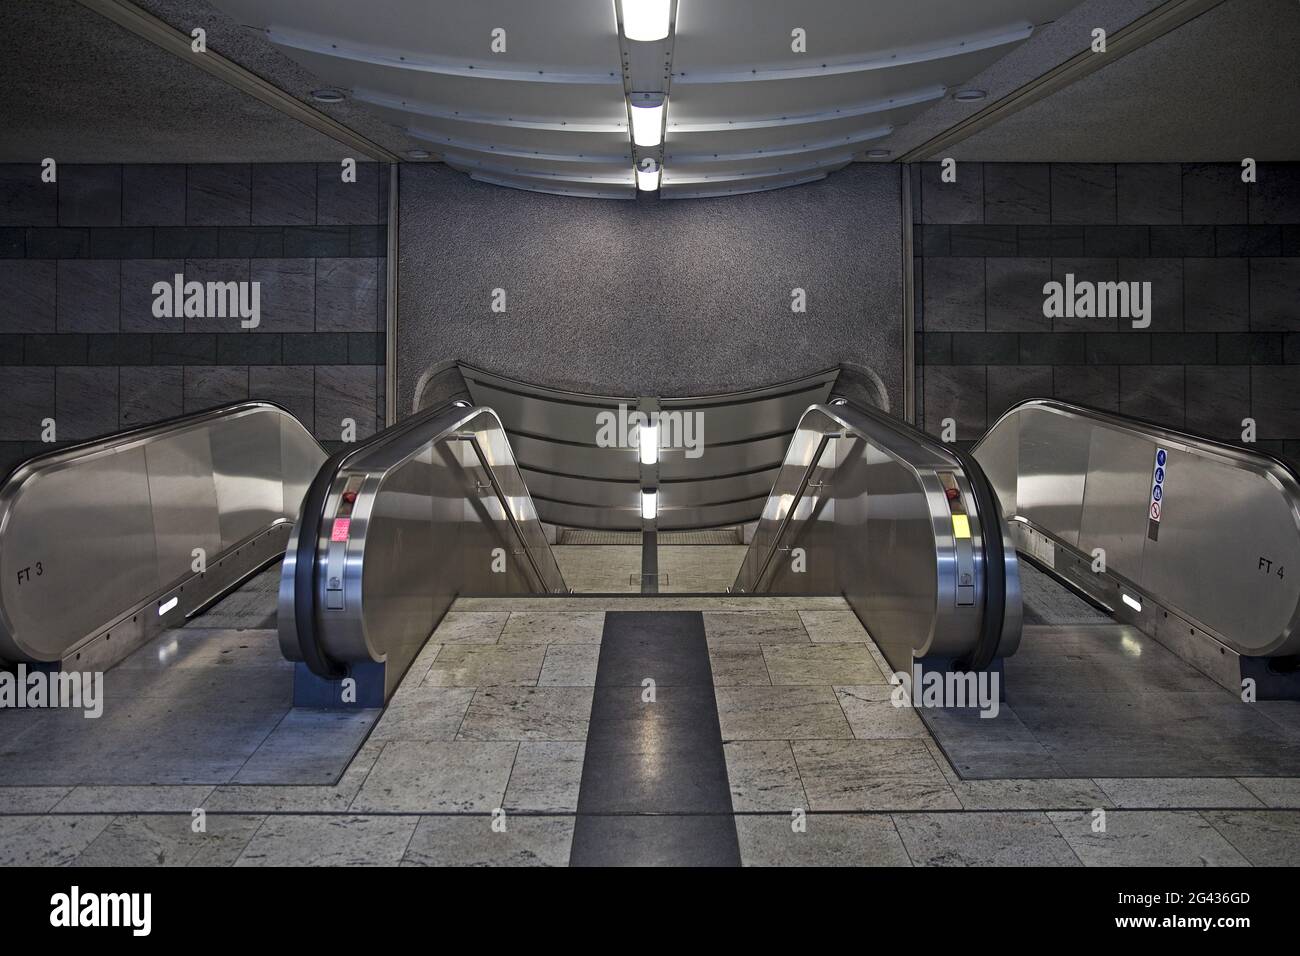 Escalier roulant de la station de métro Westentor, Dortmund, région de Ruhr, Allemagne, Europe Banque D'Images